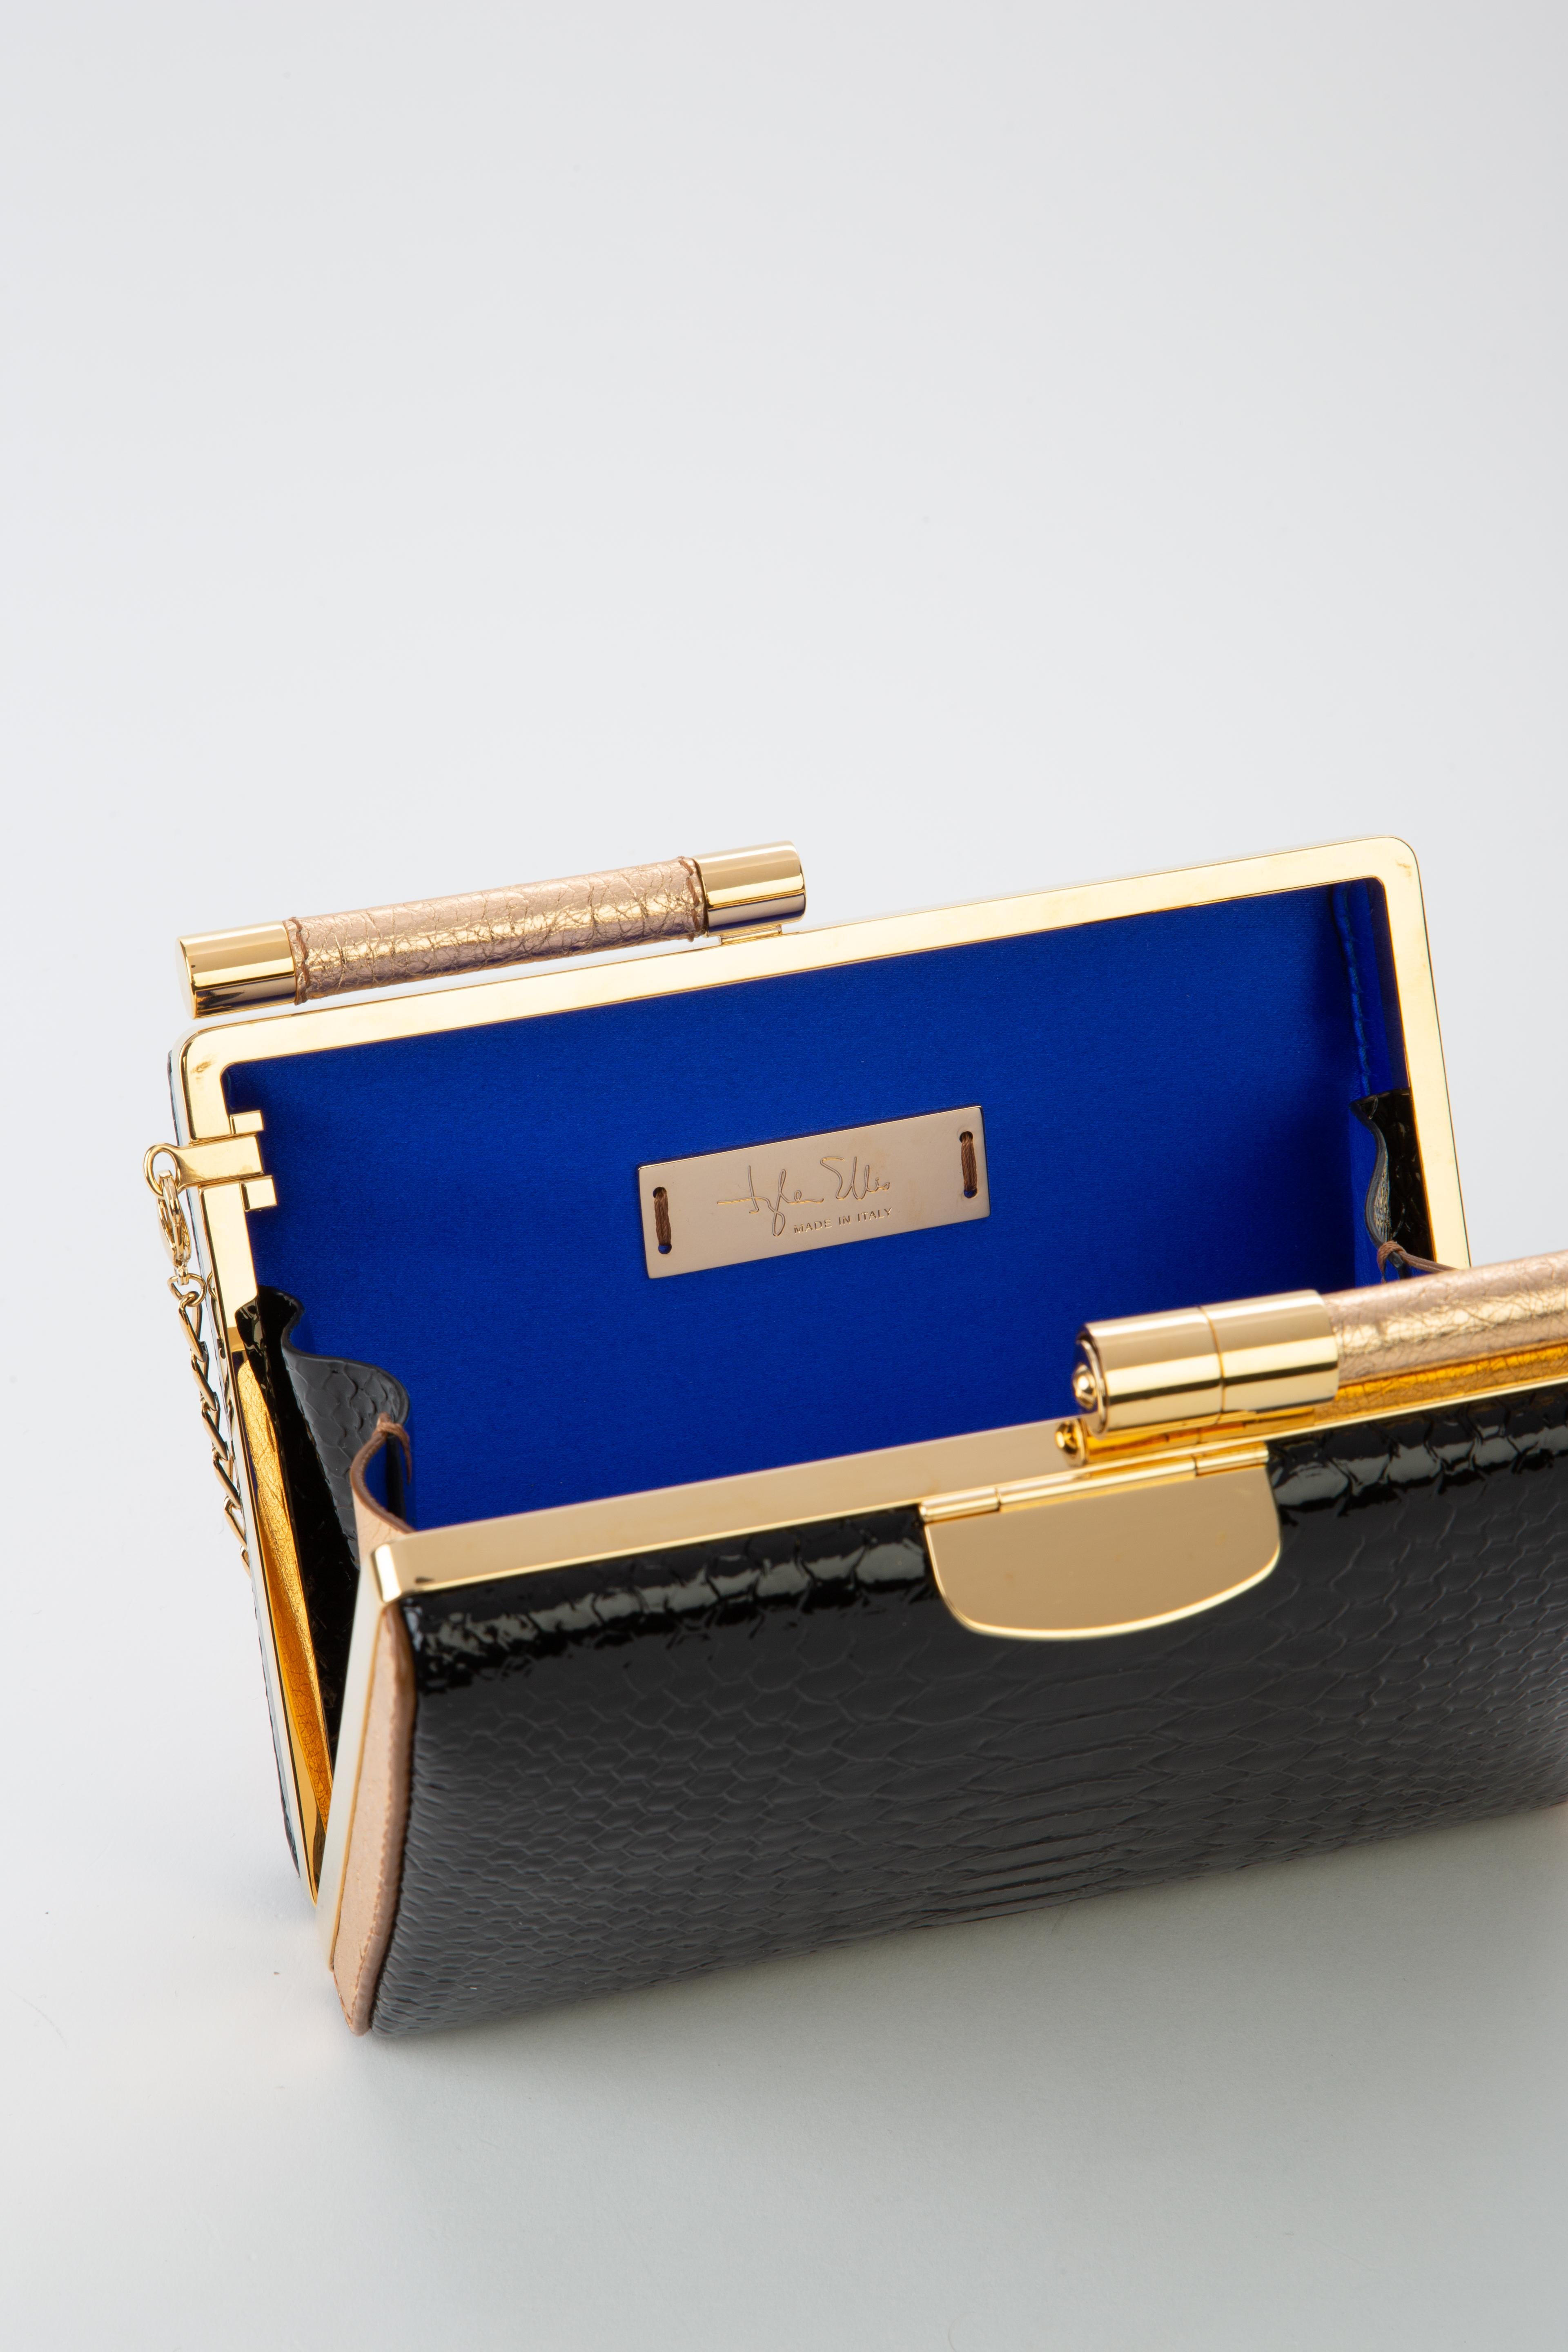 Women's TYLER ELLIS Jamie Clutch Small Black Patent Python + Gold Ostrich Gold Hardware